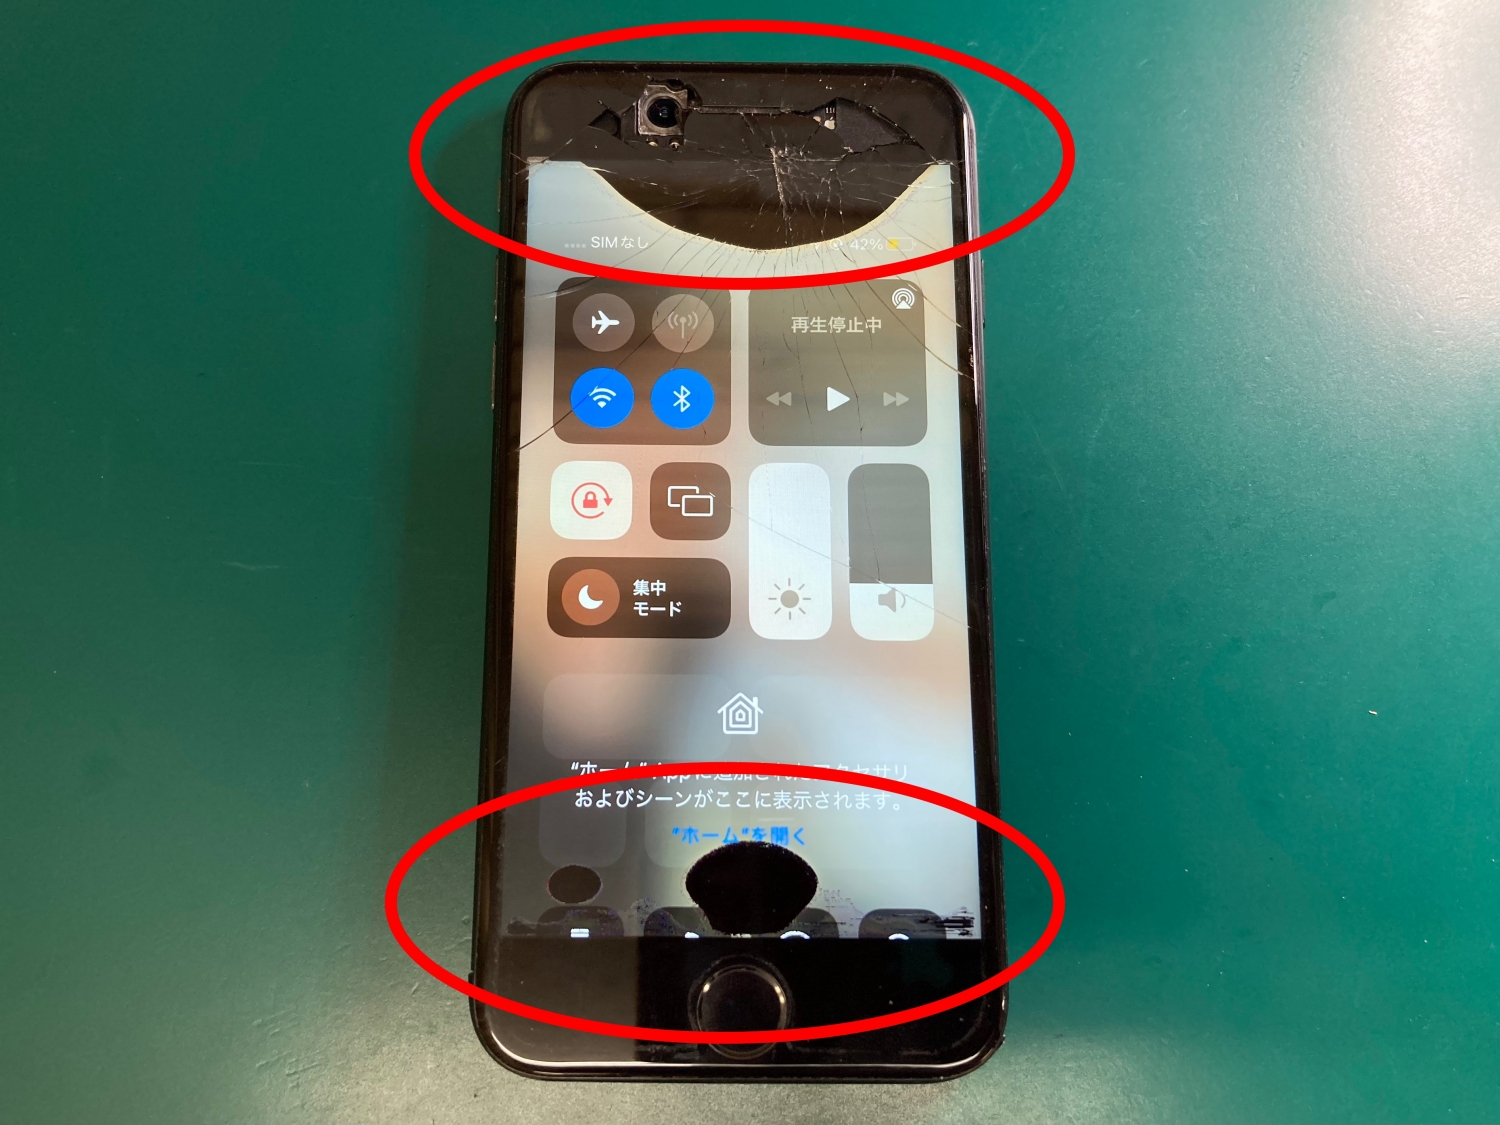 画面が割れてカメラが露出し、液晶漏れの症状が発生しているiPhone修理のご依頼をいただきました。